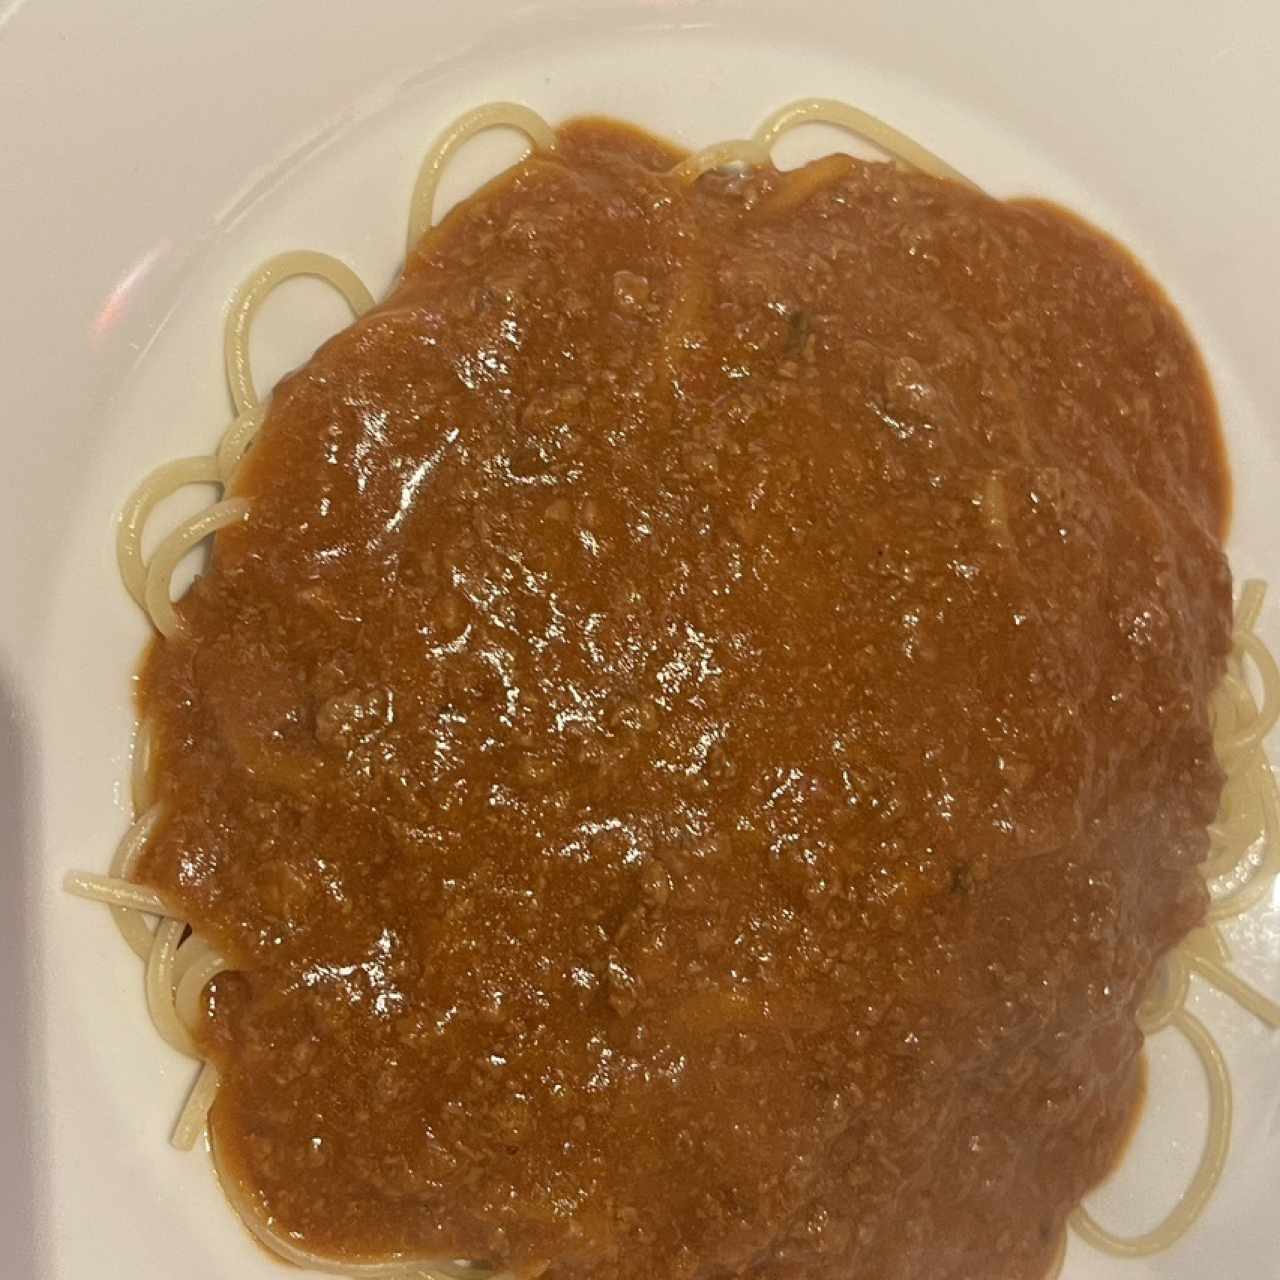 Soaghetti bolognesa